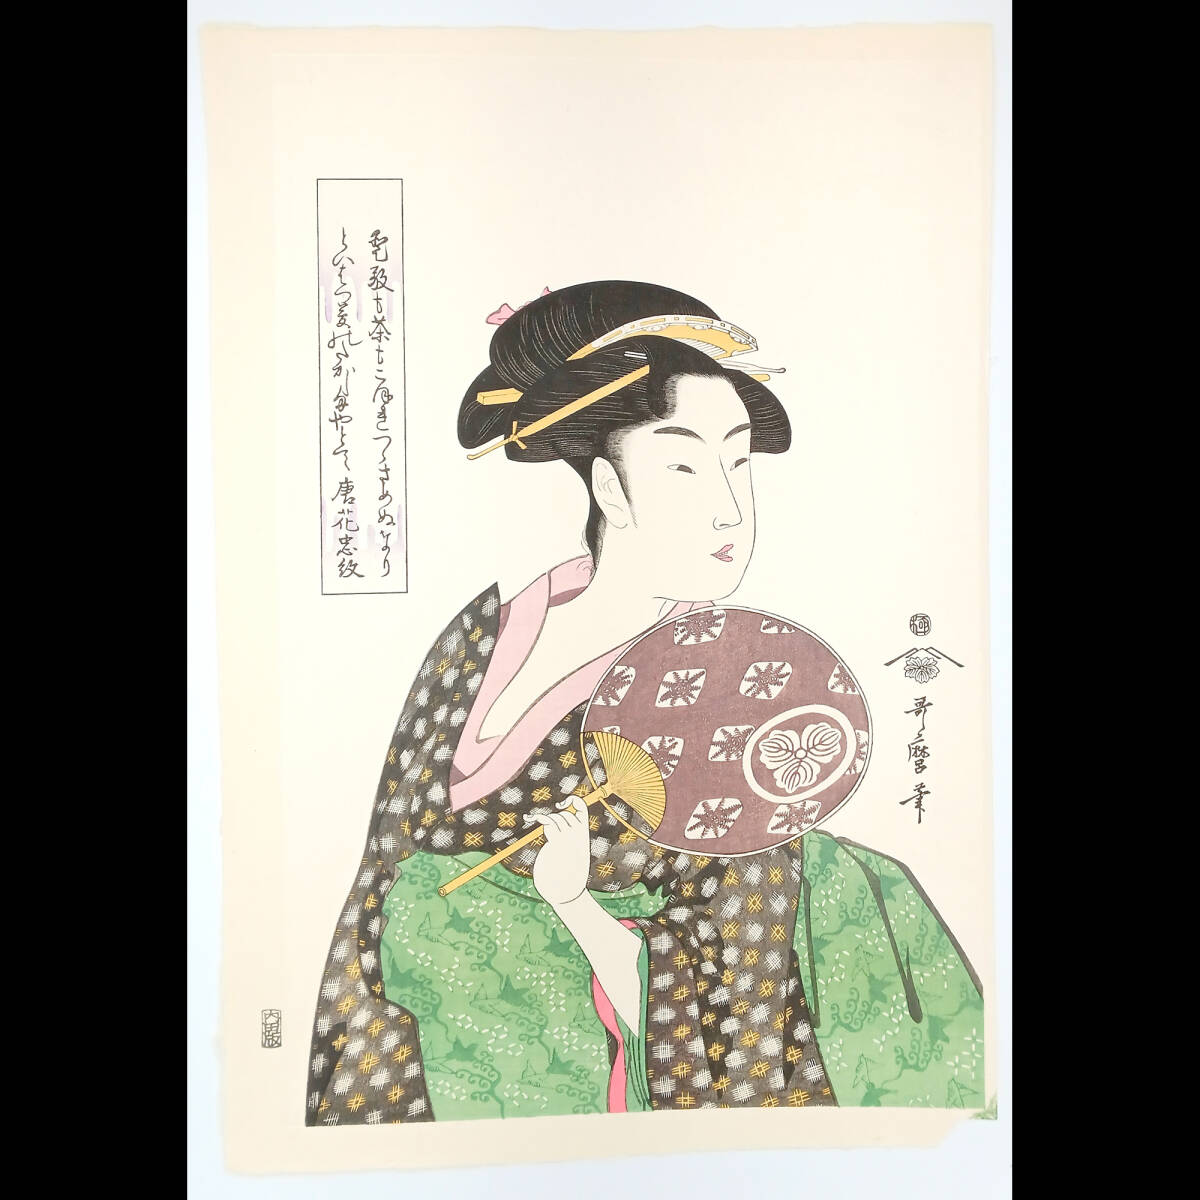 Reproducción [Reimpresión] Takashima Ohisa de Kitagawa Utamaro Tamaño completo ☆Envío gratis☆, Cuadro, Ukiyo-e, Huellas dactilares, Retrato de una mujer hermosa